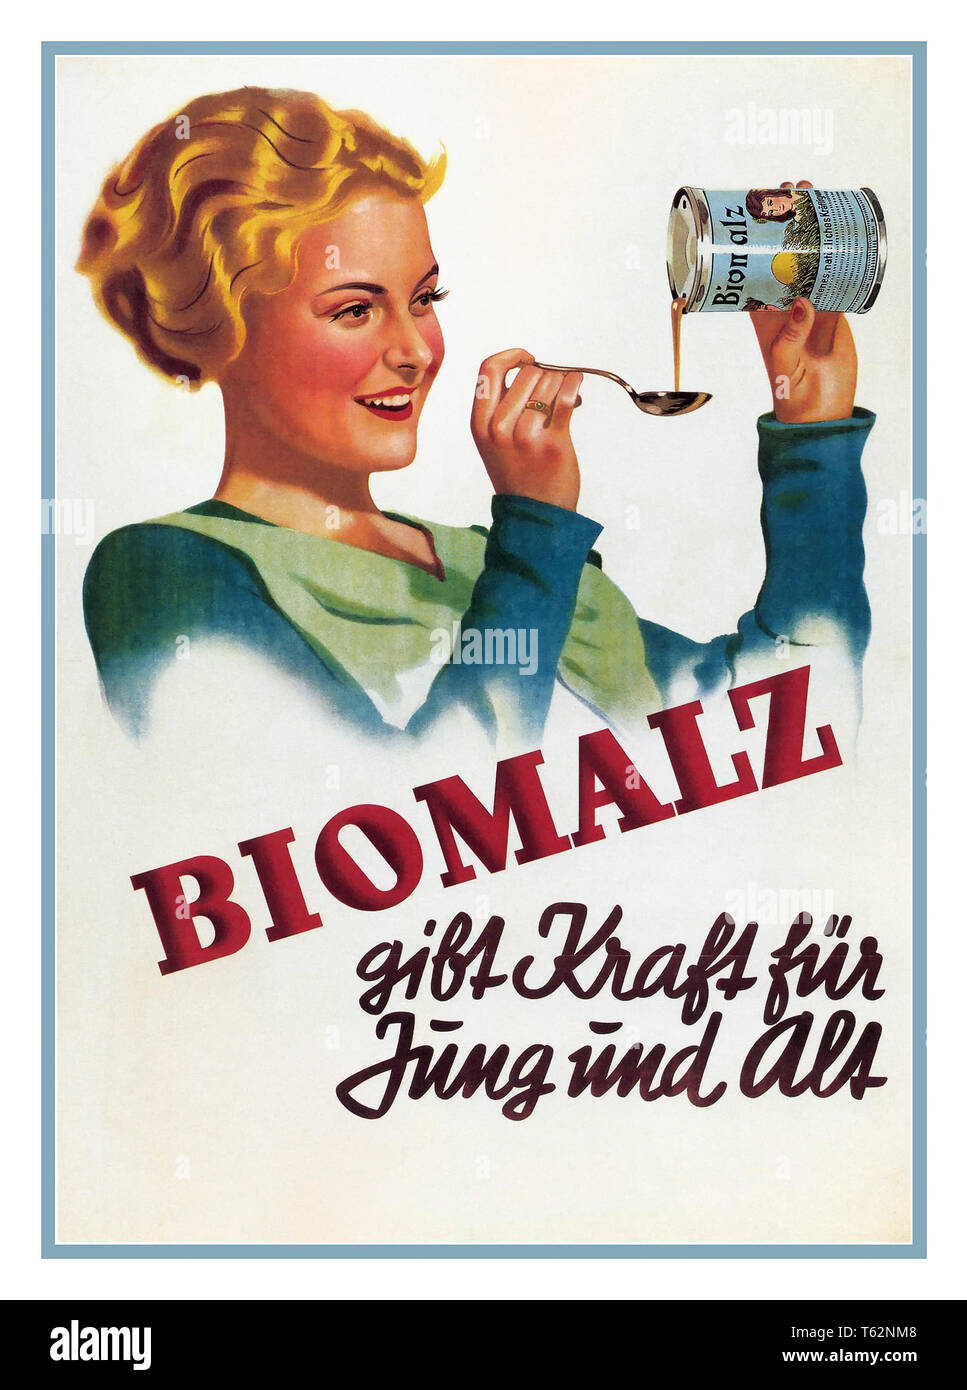 Biomalz allemand des années 1920 et l'Autriche affiche publicitaire ancienne Affiche publicitaire ancienne pour un brevet allemand supplément nutritionnel de santé de malt produit. Banque D'Images